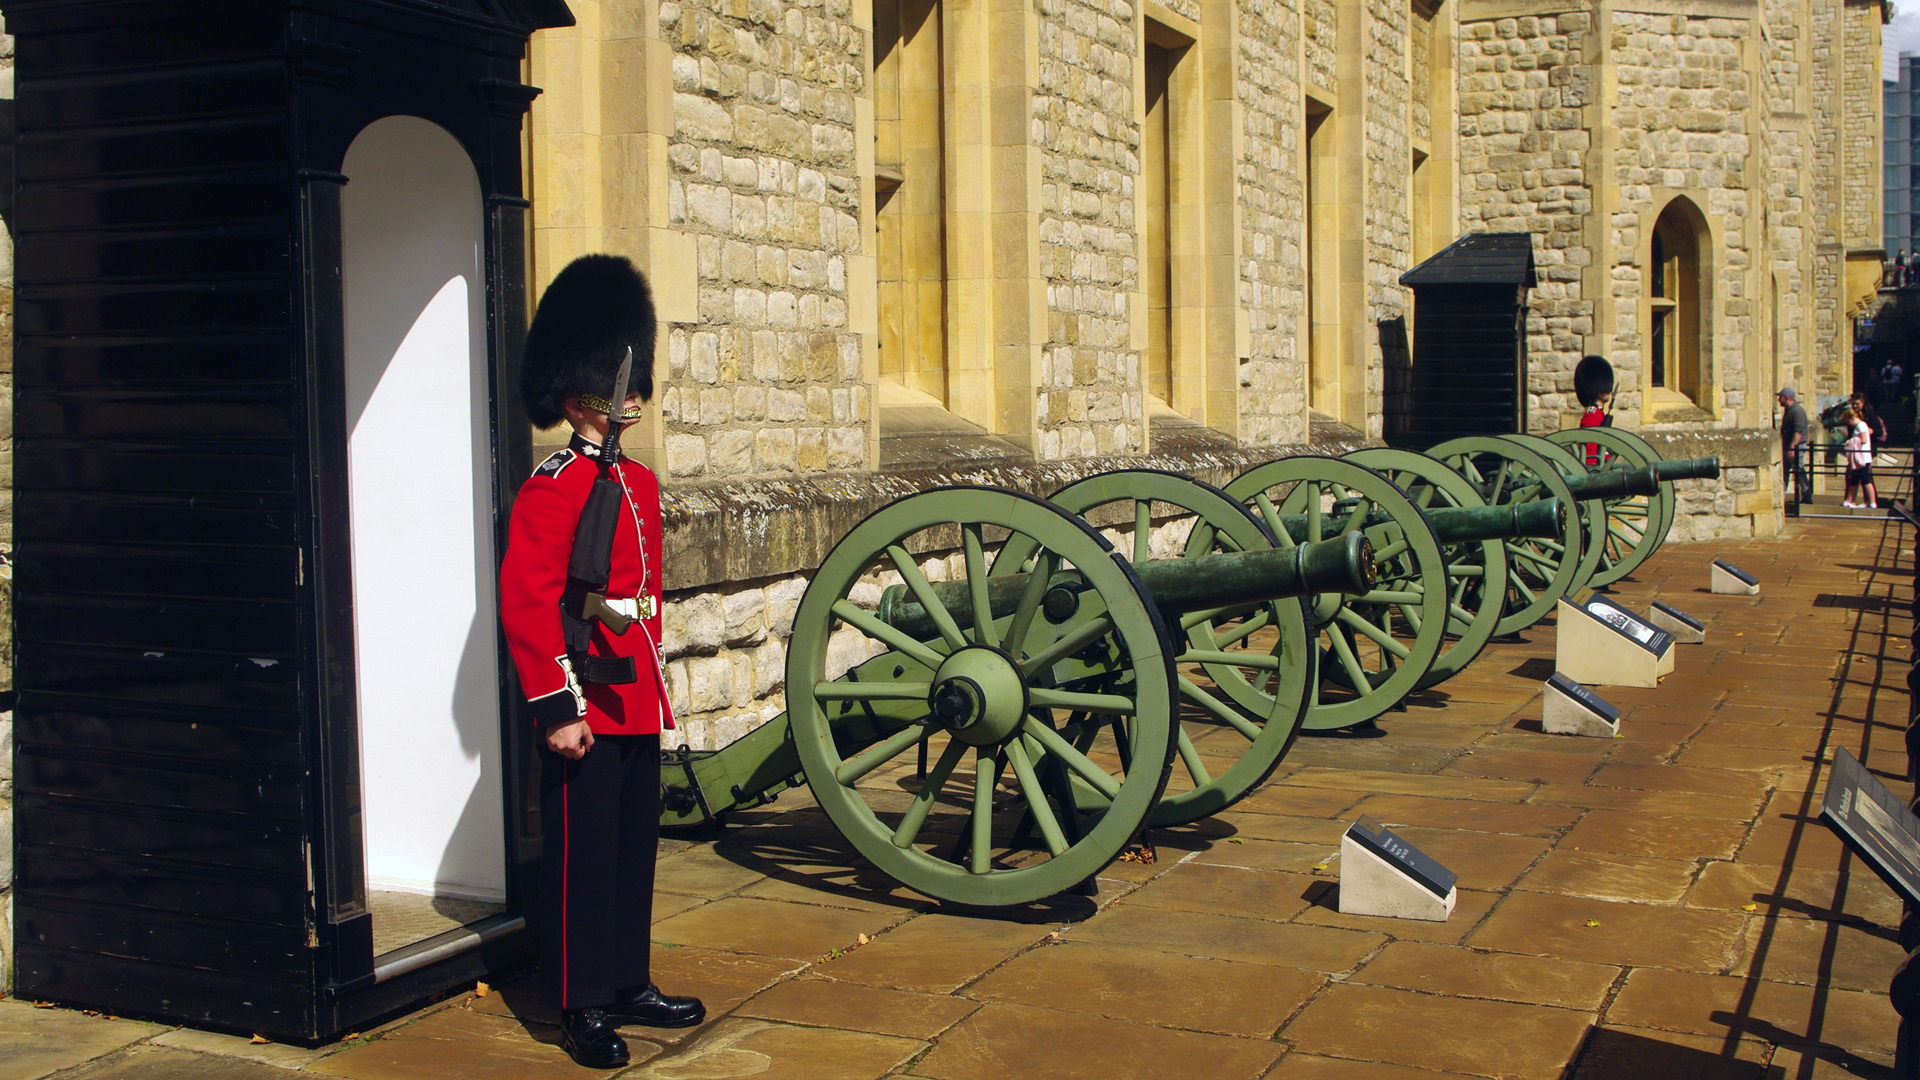 Tower London Guards Waterloo Barracks 1840 Crown Jewels